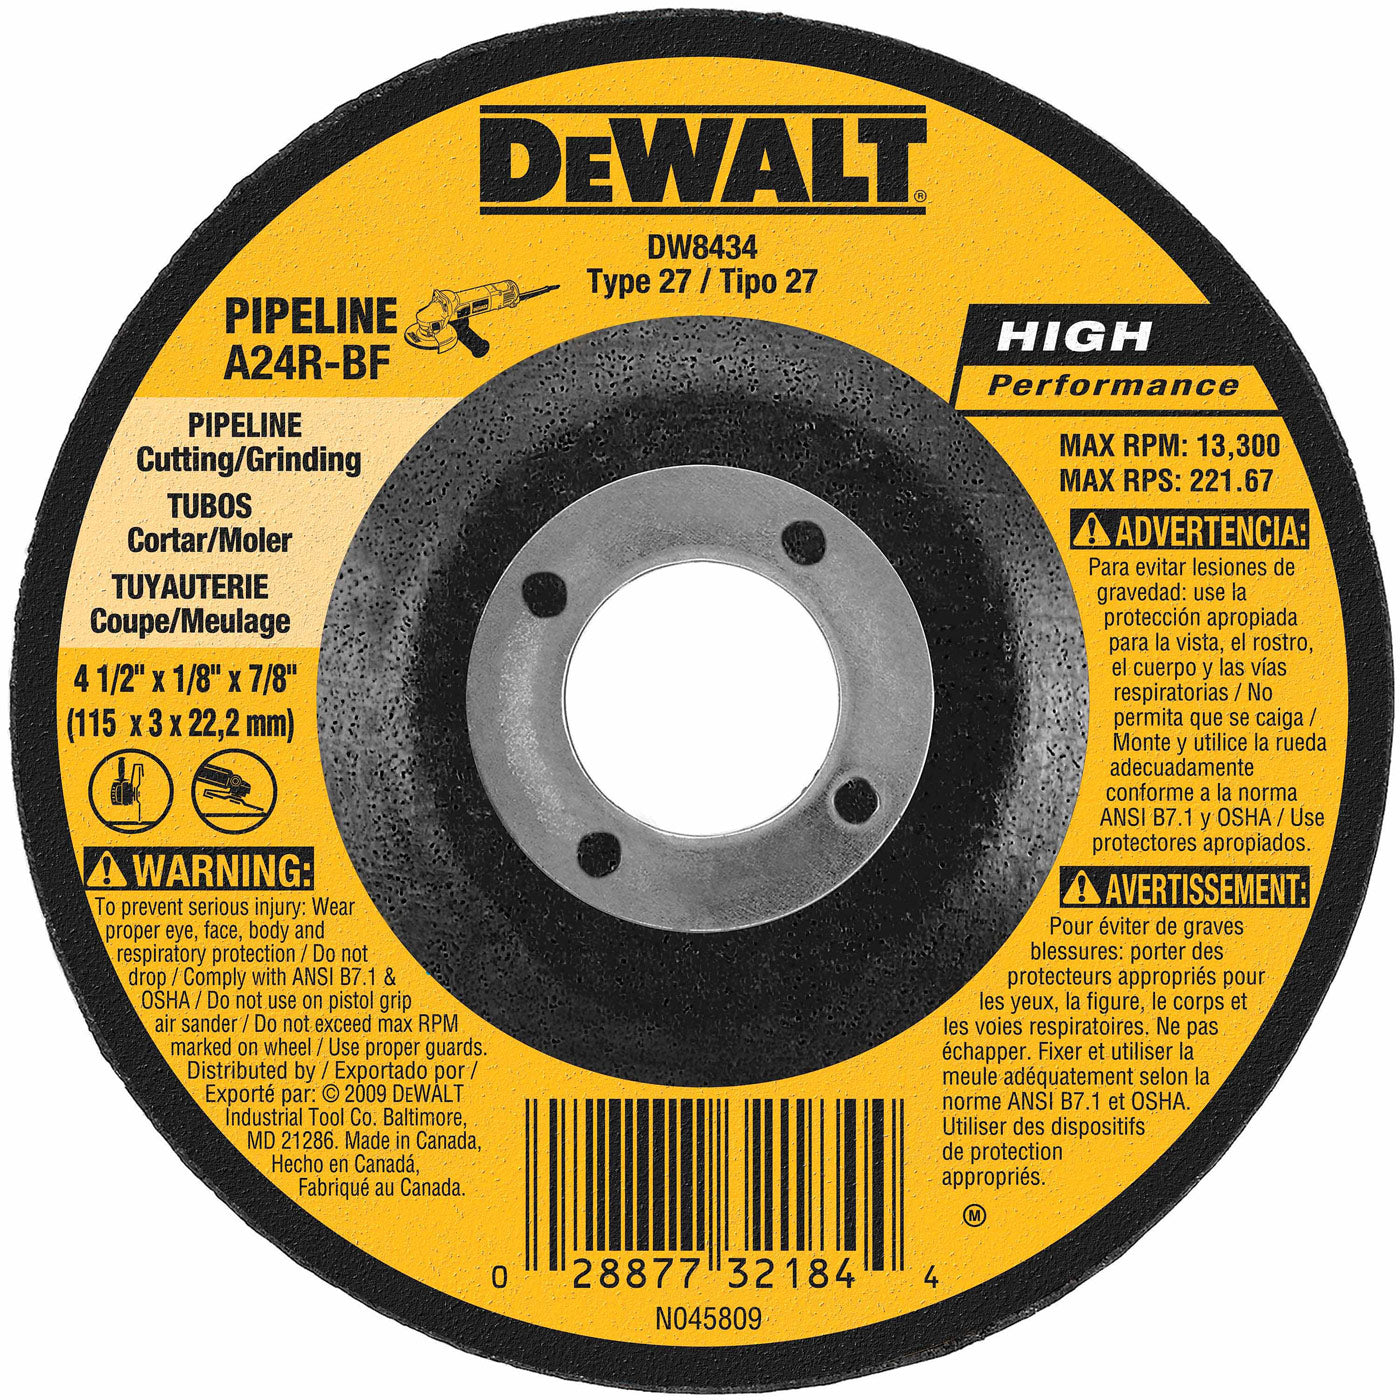 DeWalt DW8434 4-1/2" x 1/8" x 7/8" Pipeline Cutting / Grinding Wheel